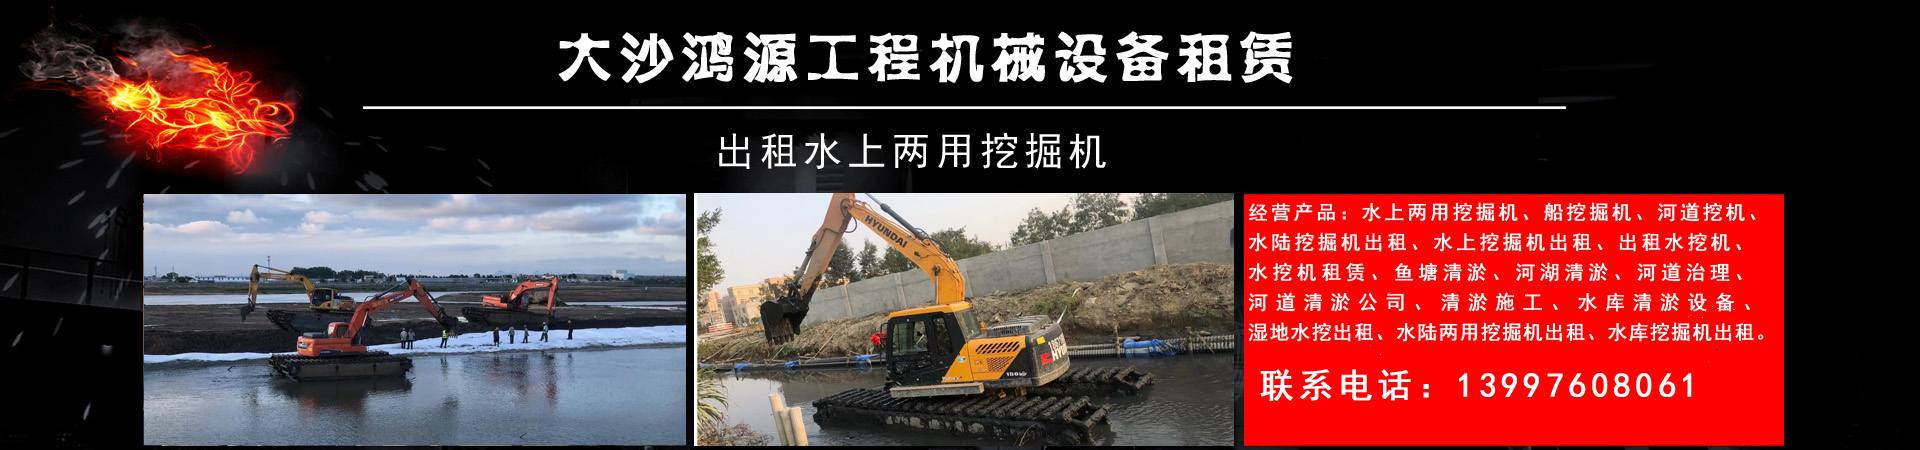 水挖机租赁、上海本地水挖机租赁、上海、上海水挖机租赁